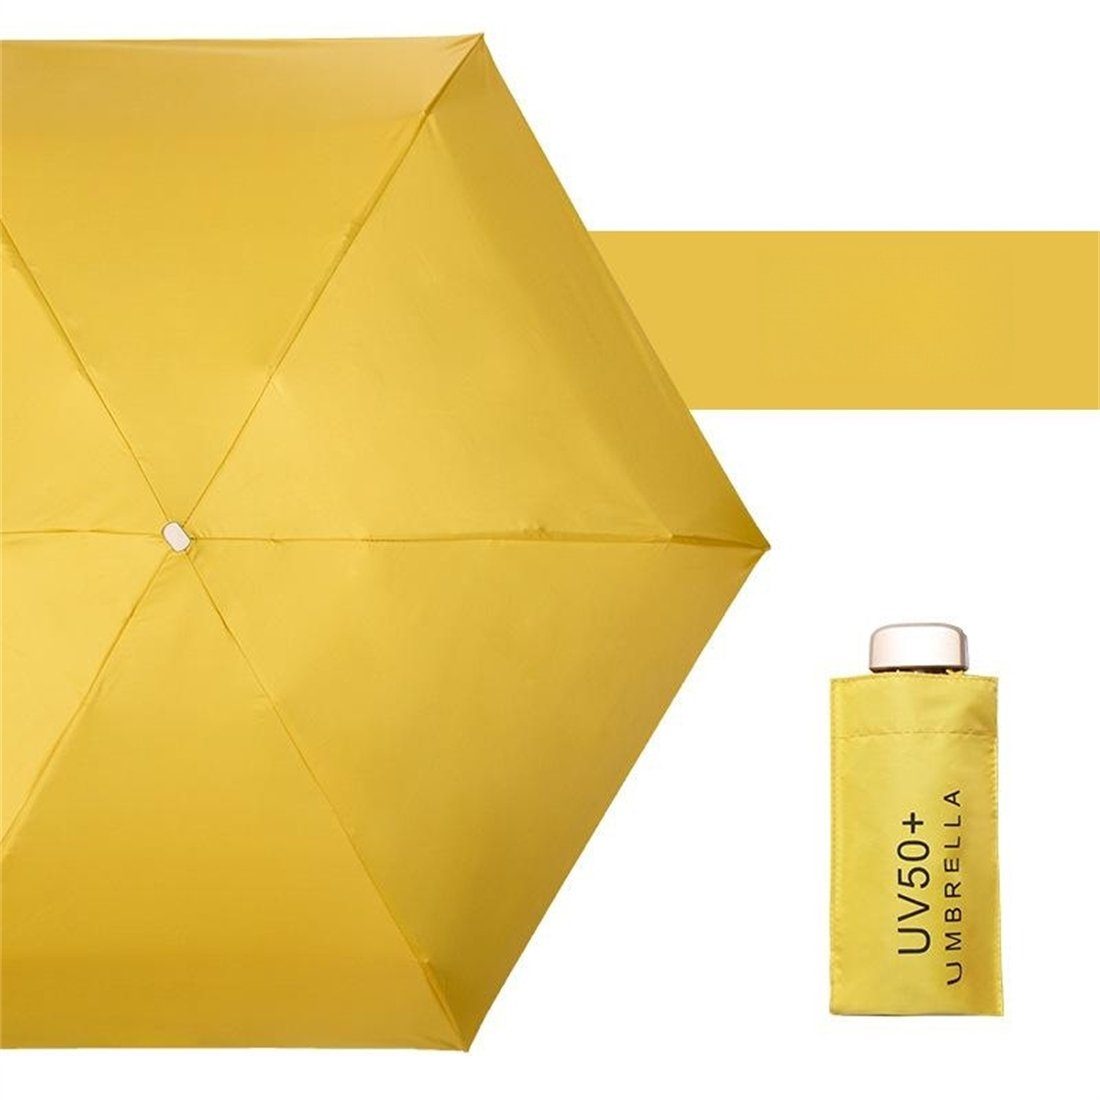 UV-Schutz winzig damen und Taschenschirme für gelb manual klein Regenschirm, Regen Taschenregenschirm YOOdy~ Sonnenschutz Sonne vor schützt small für unterwegs